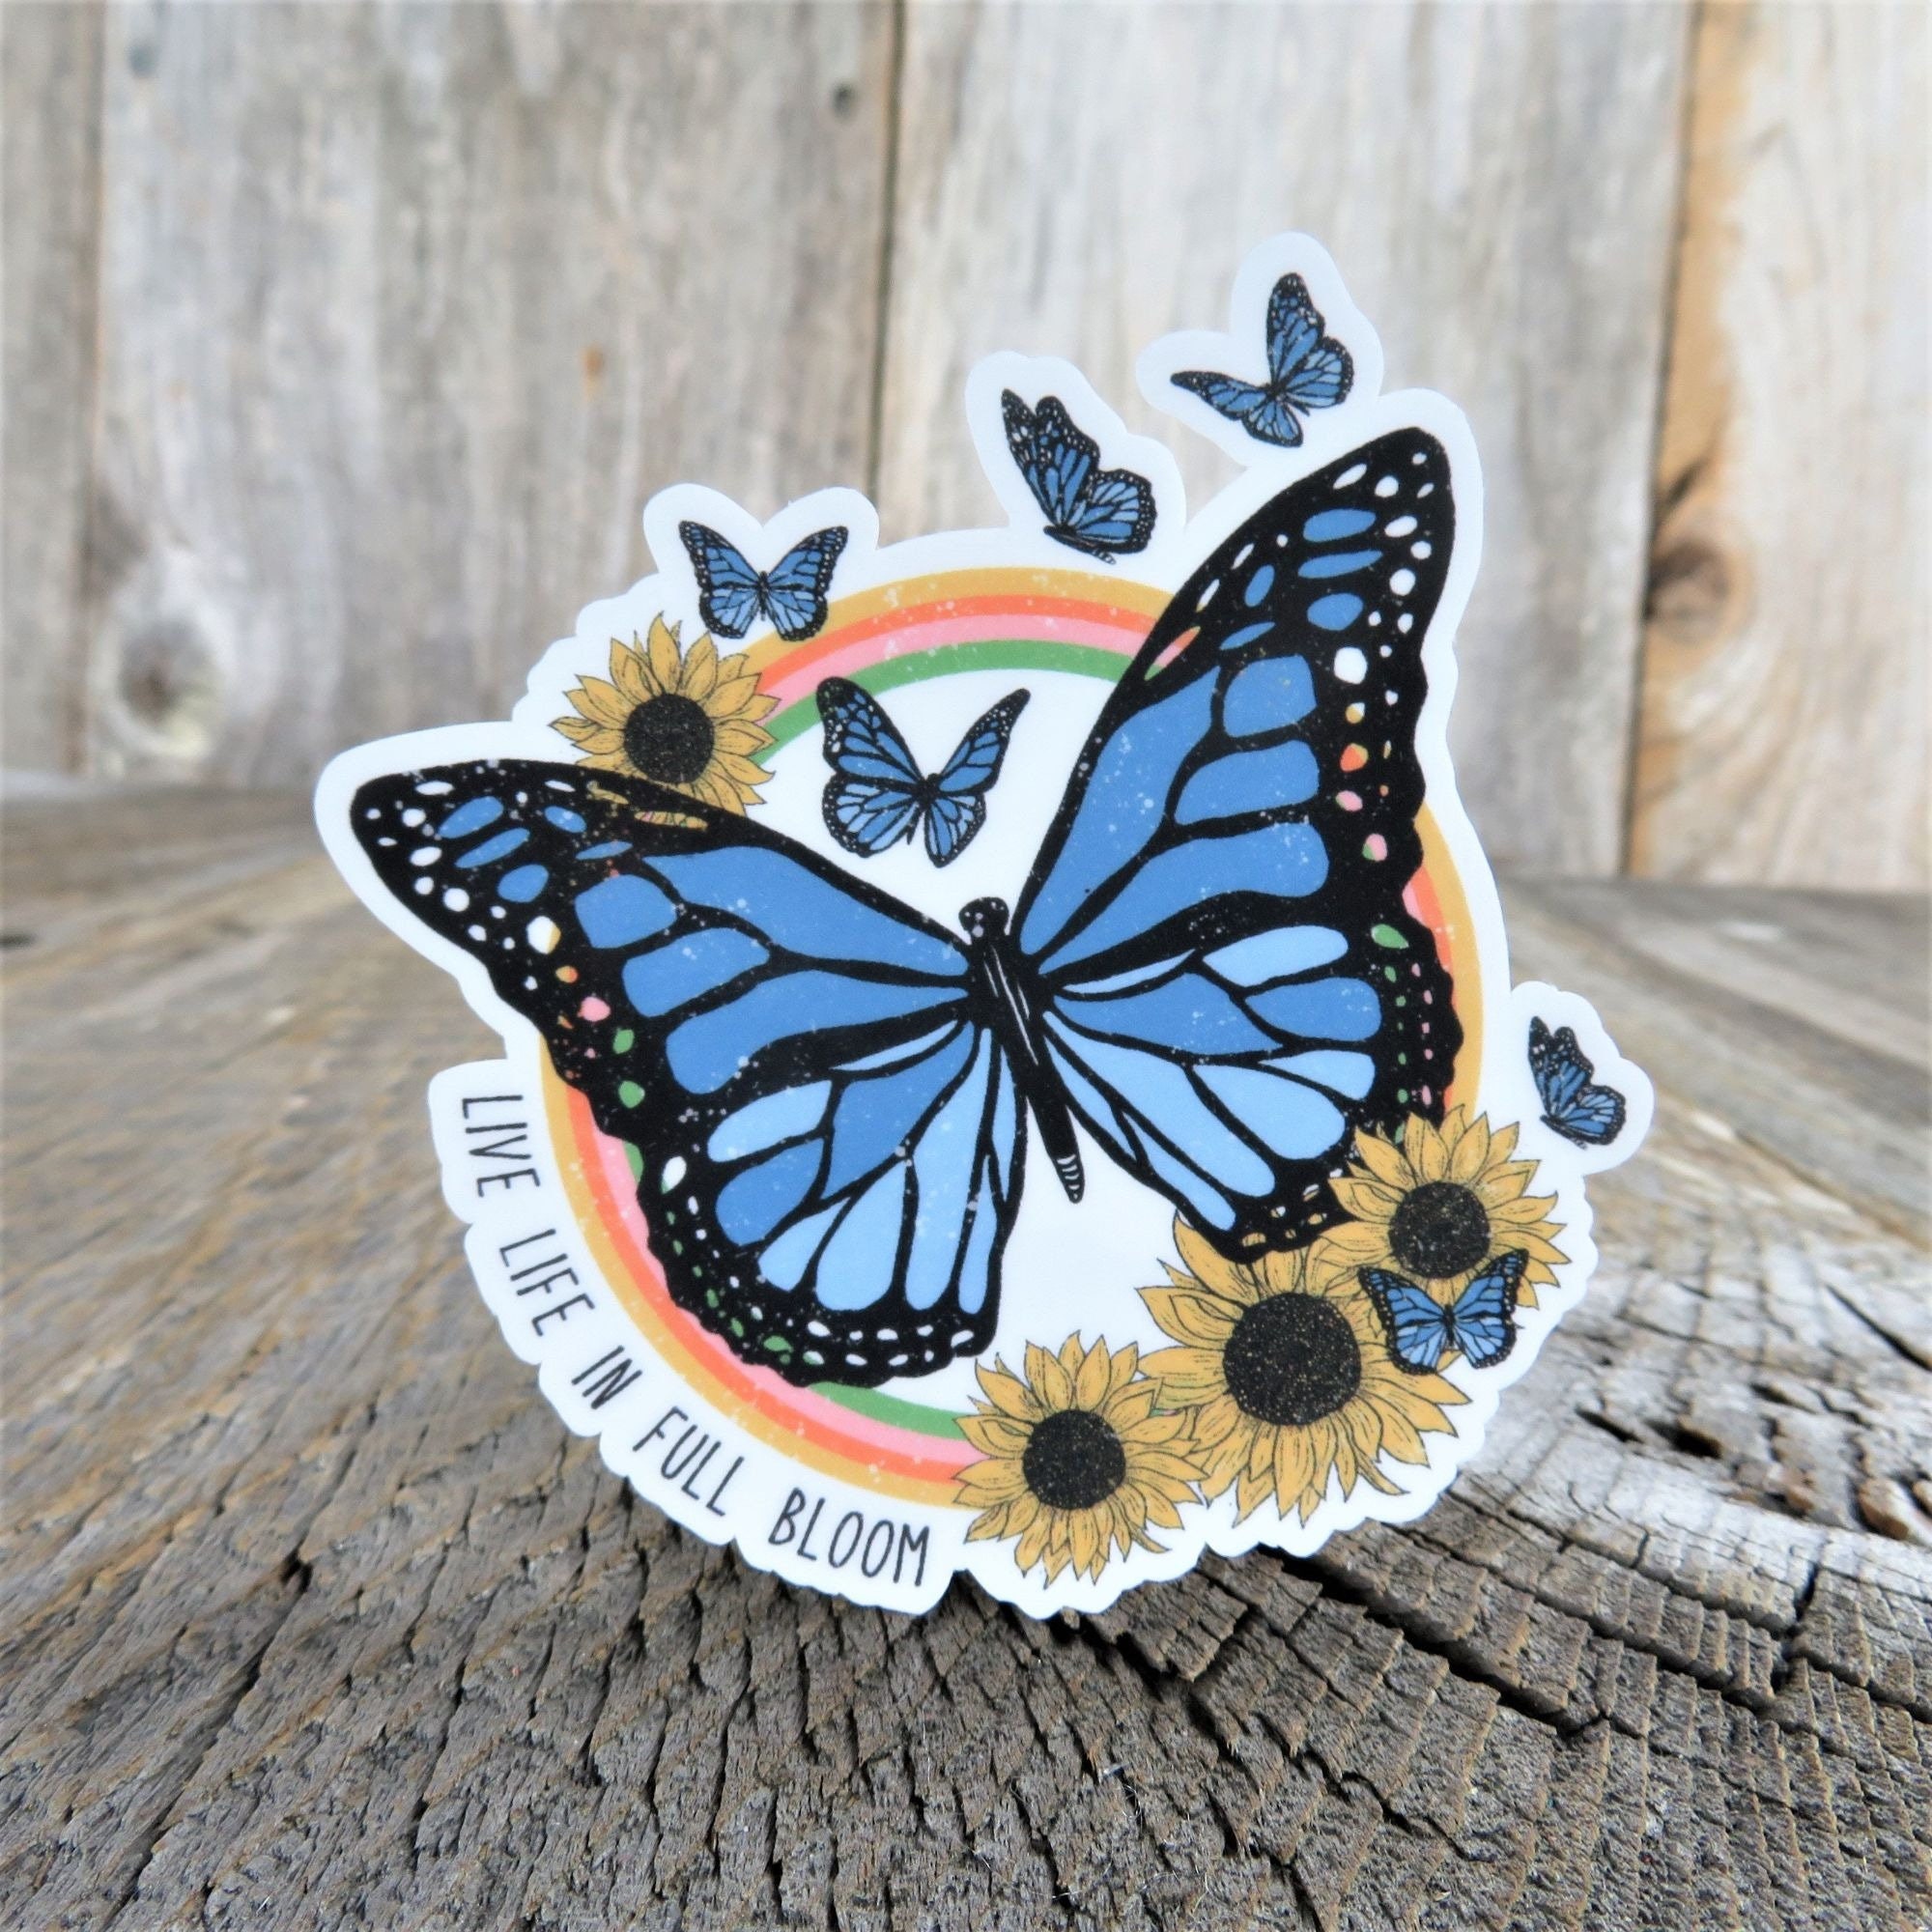 Monarch Butterfly Raising Kit Butterfly Raising Kit, Milkweed Floral Tube  Holder, Floral Tube Holder, Butterfly Kit Butterfly Enclosure Diy 